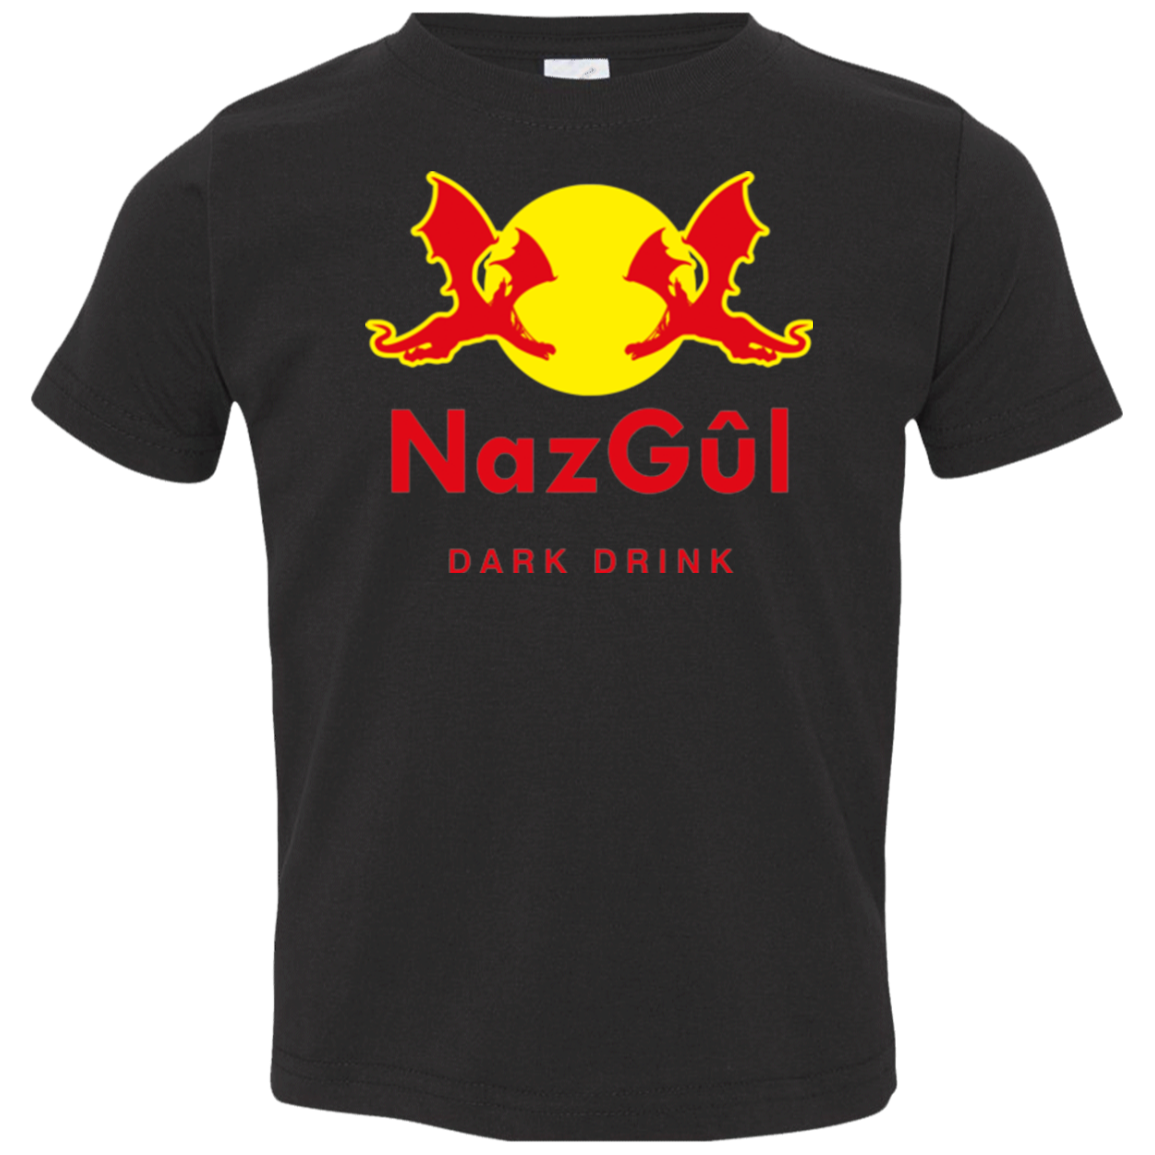 Dark drink Toddler Premium T-Shirt